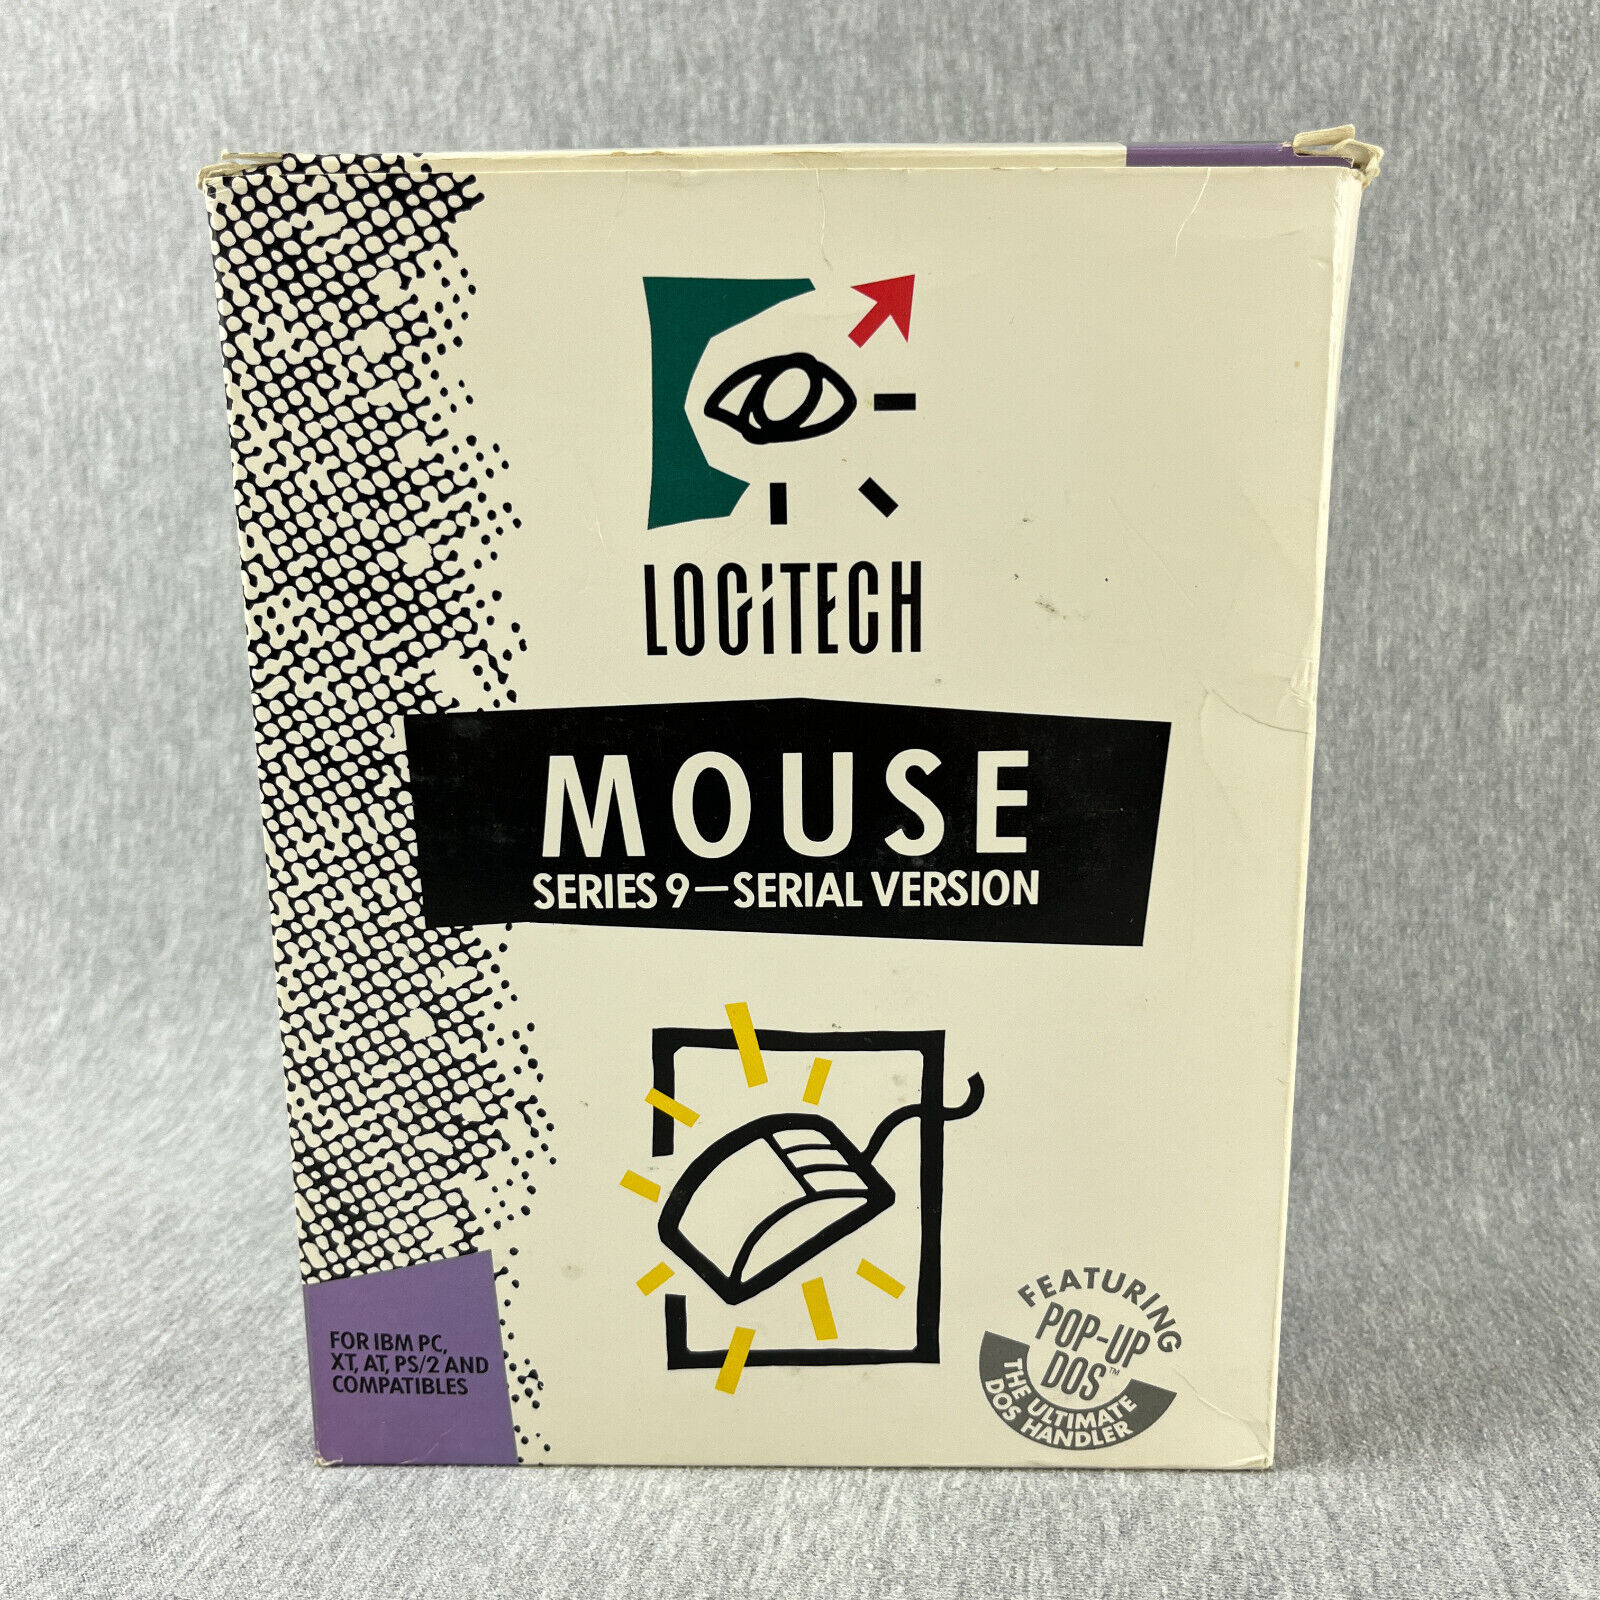 Vintage Logitech Mouse Series 9 - Serial Version 3-Button 1989 IBM PC Pop-Up DOS